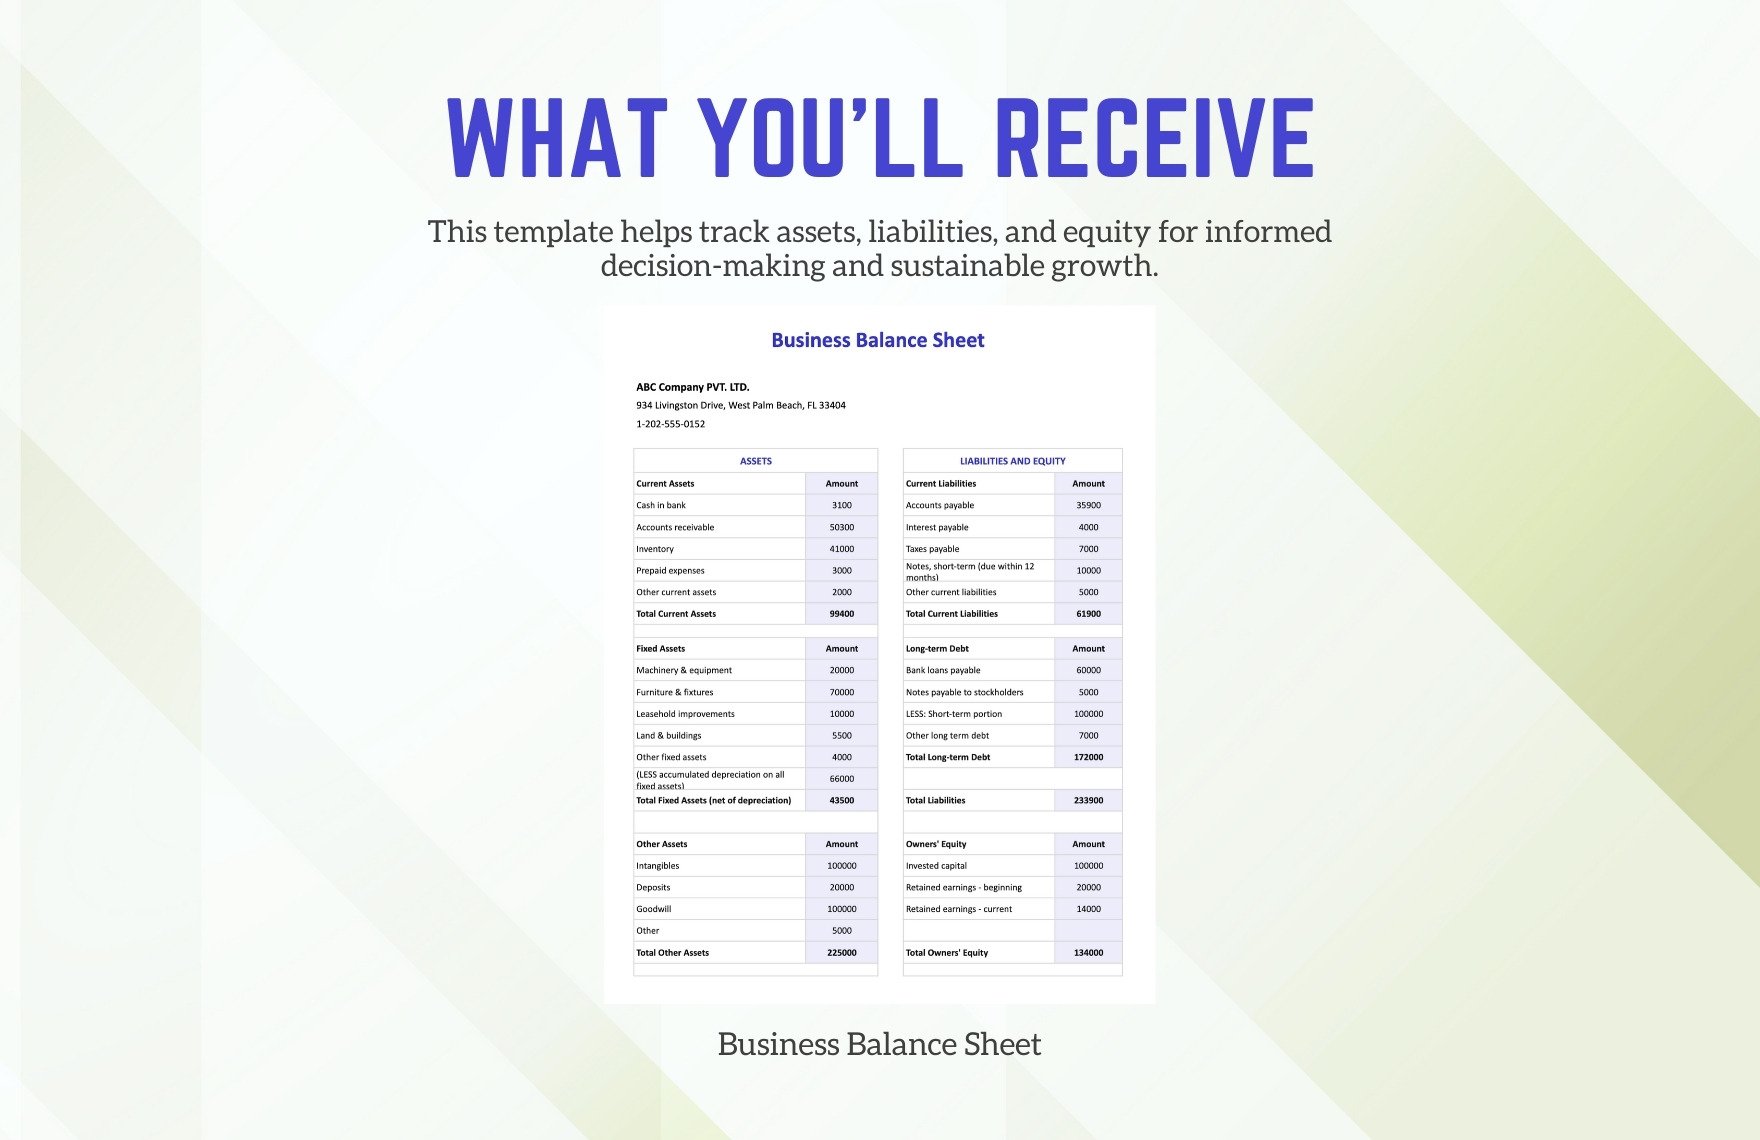 Business Balance Sheet Template